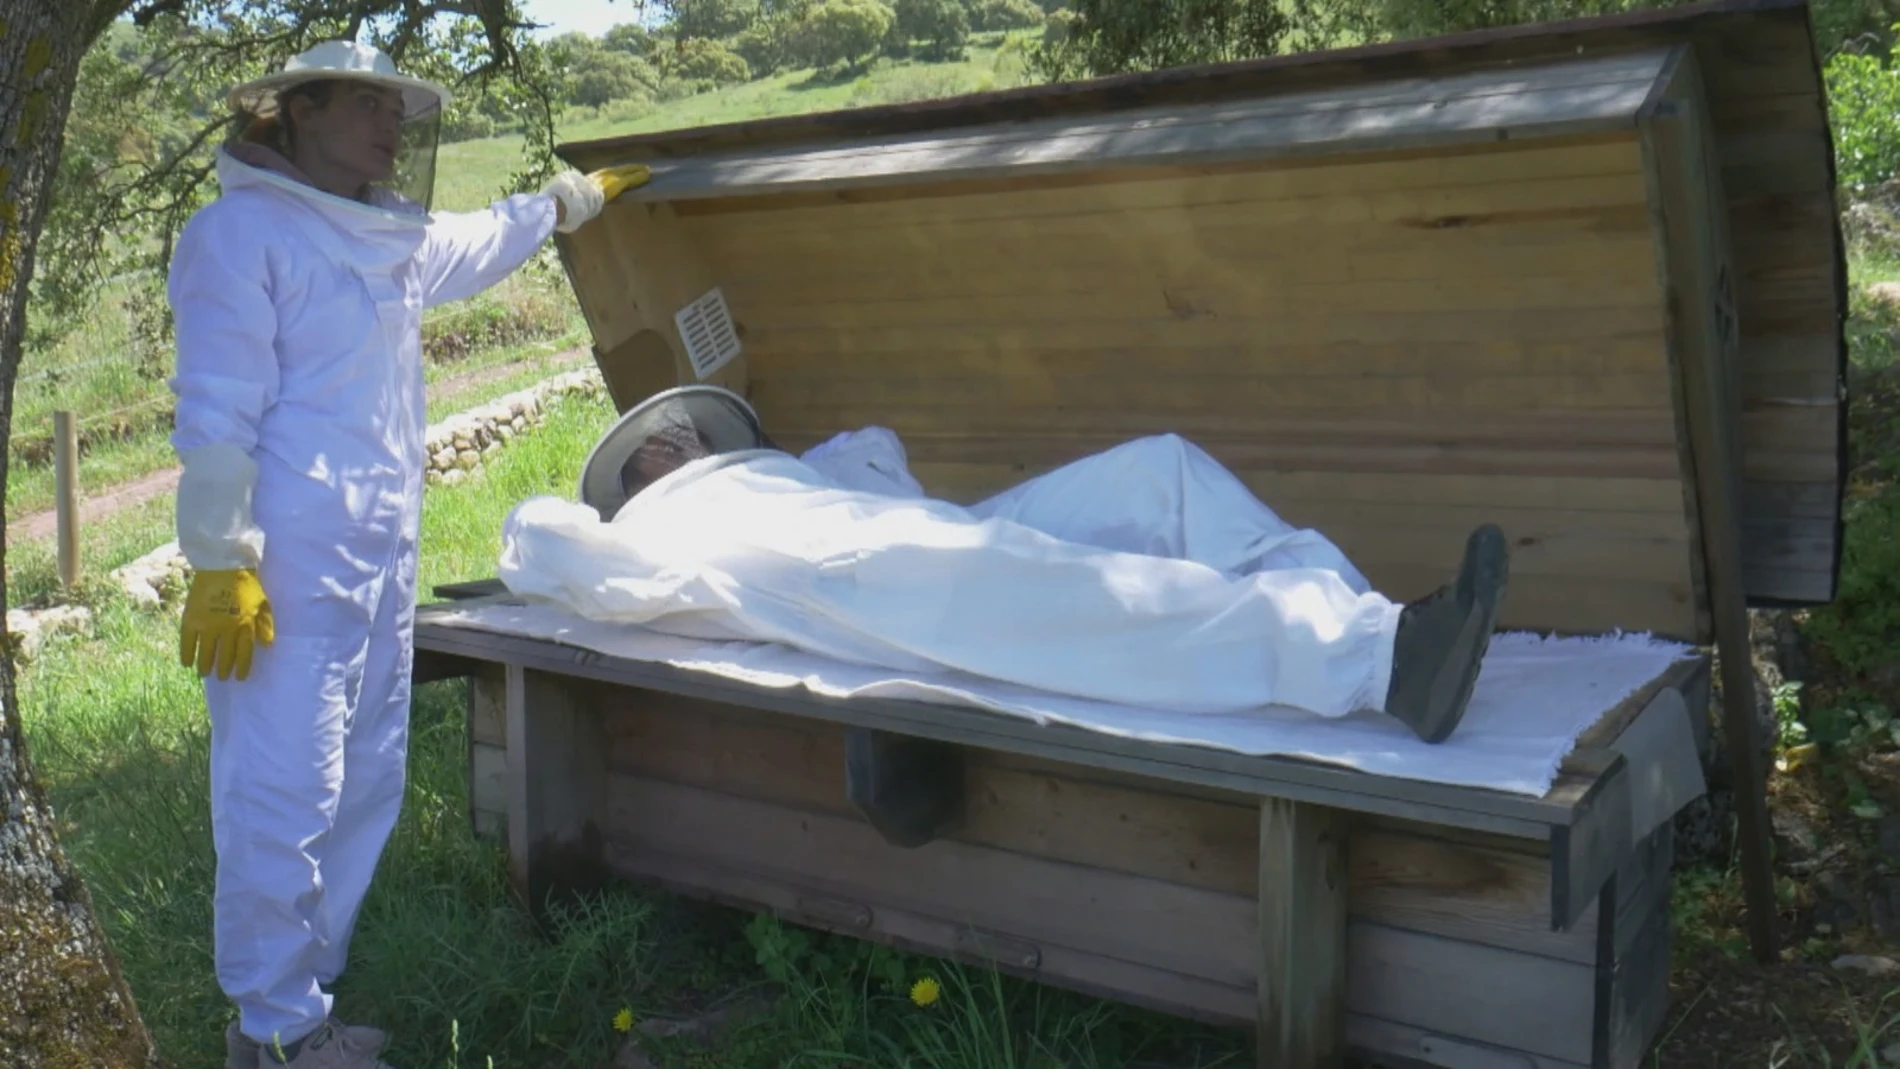 La 'cama de abejas', acostarse sobre una colmena como nuevo método de relajación 